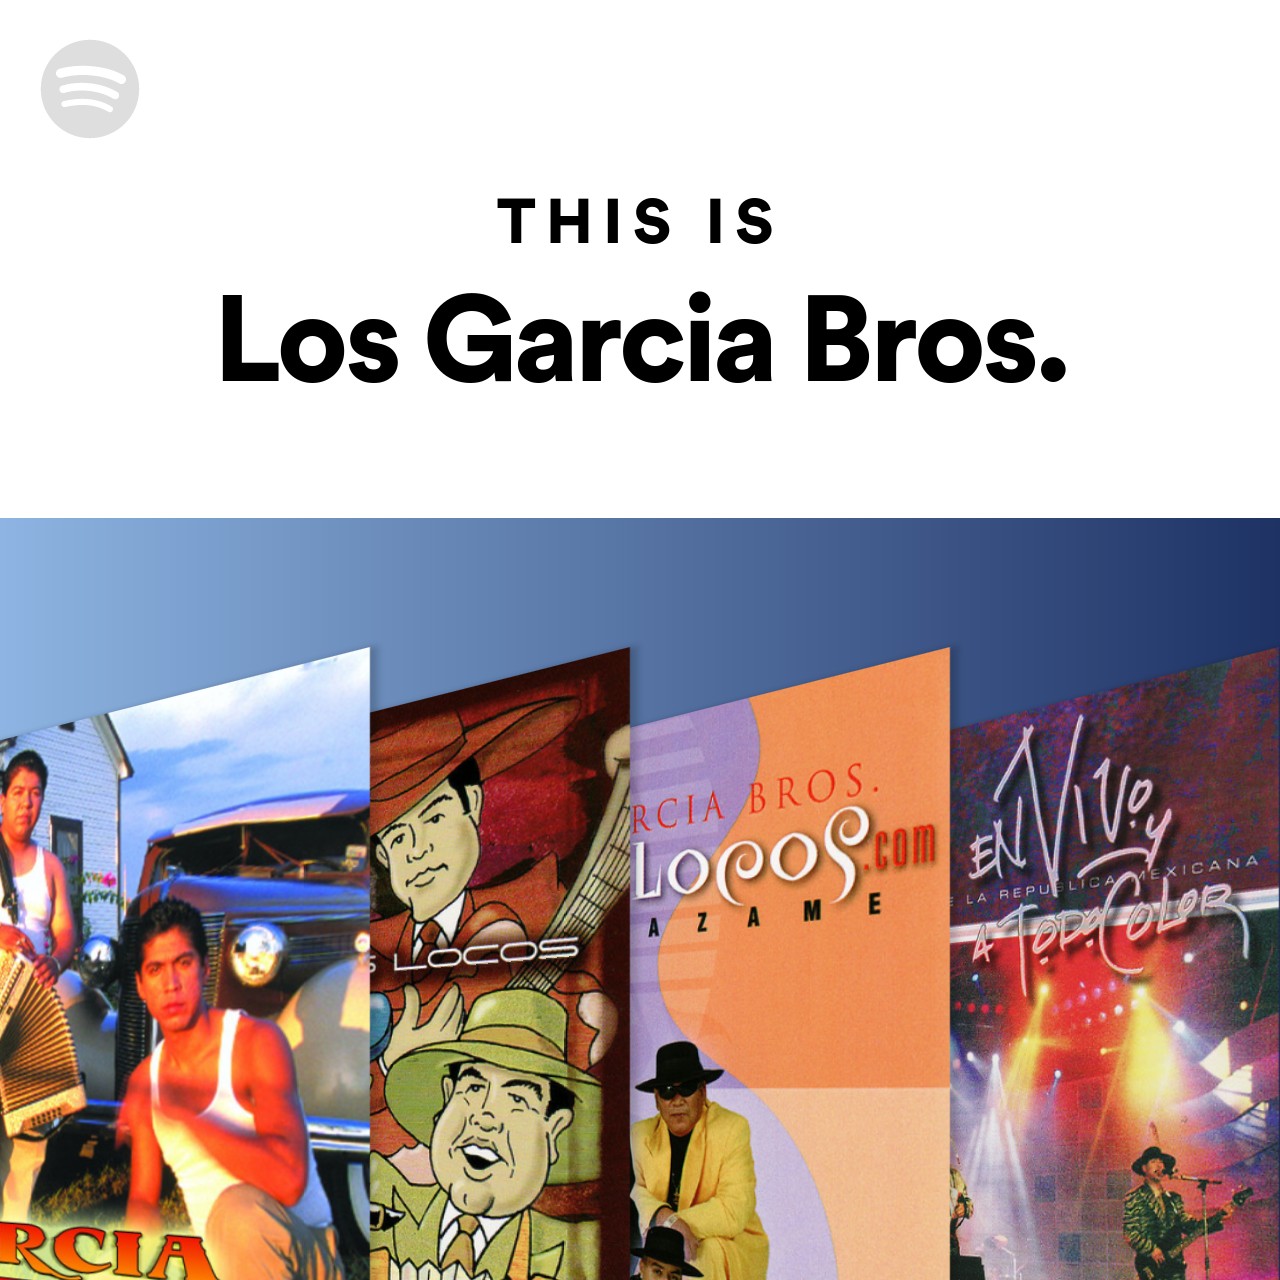 This Is Los Garcia Bros.